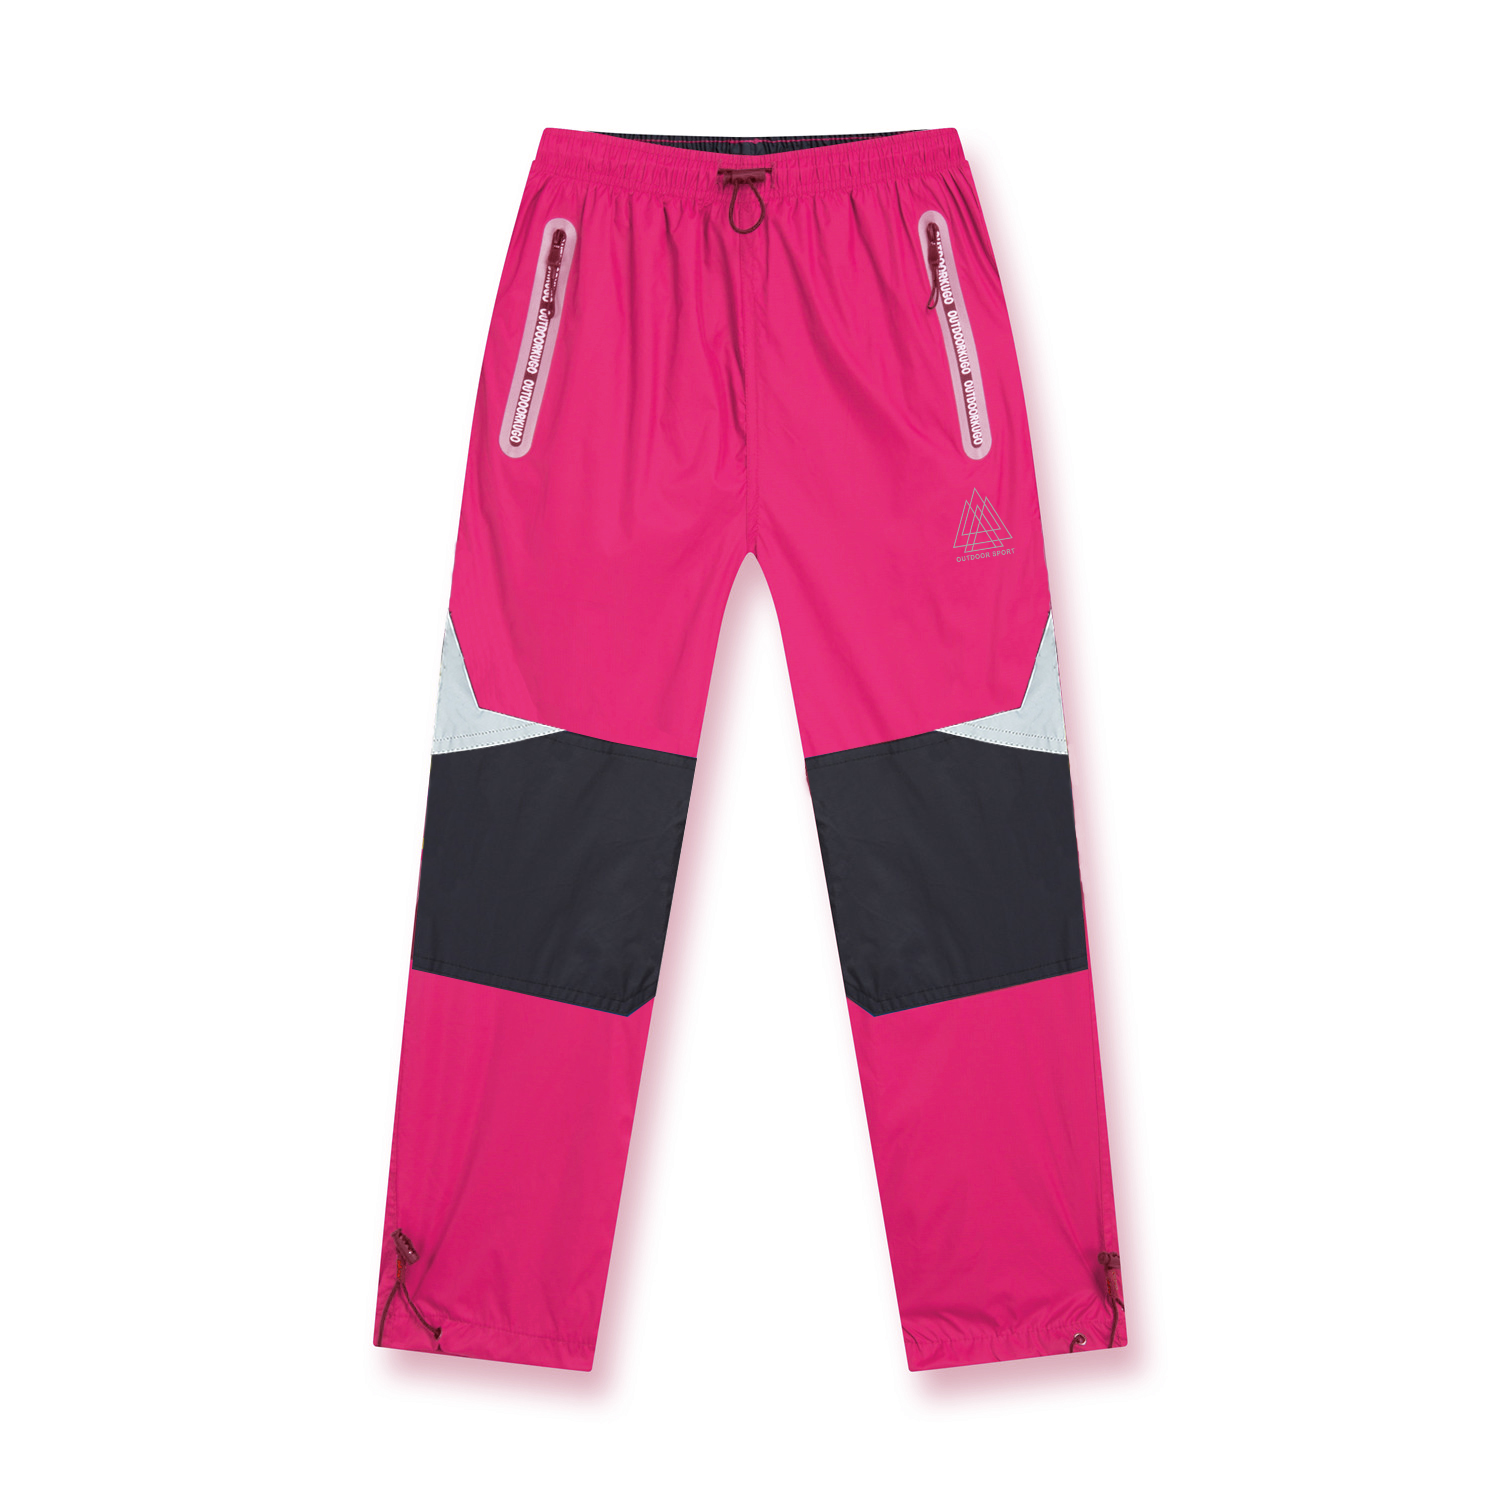 Dívčí šusťákové kalhoty - KUGO K808, fialovorůžová Barva: Růžová, Velikost: 158